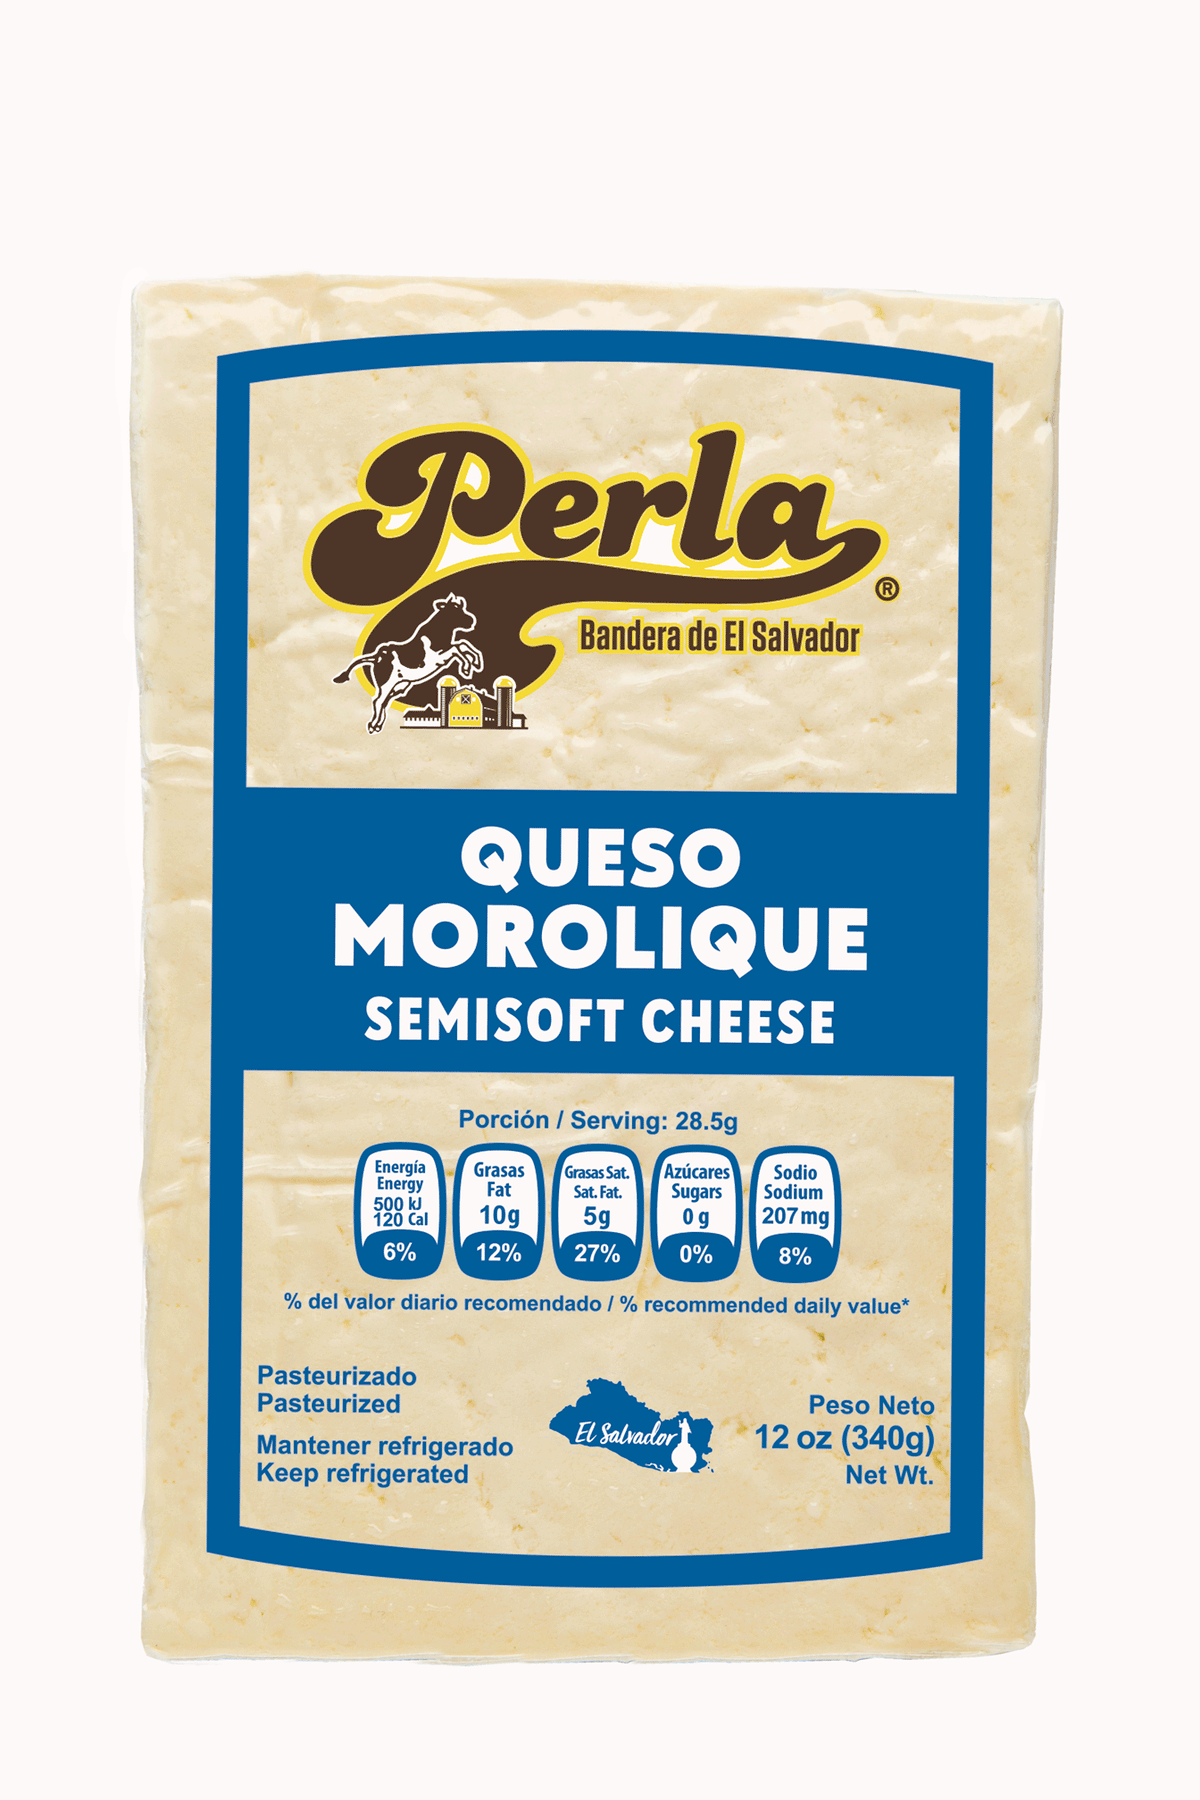 Perla Queso Morolique (Semi Soft Cheese) 12 oz